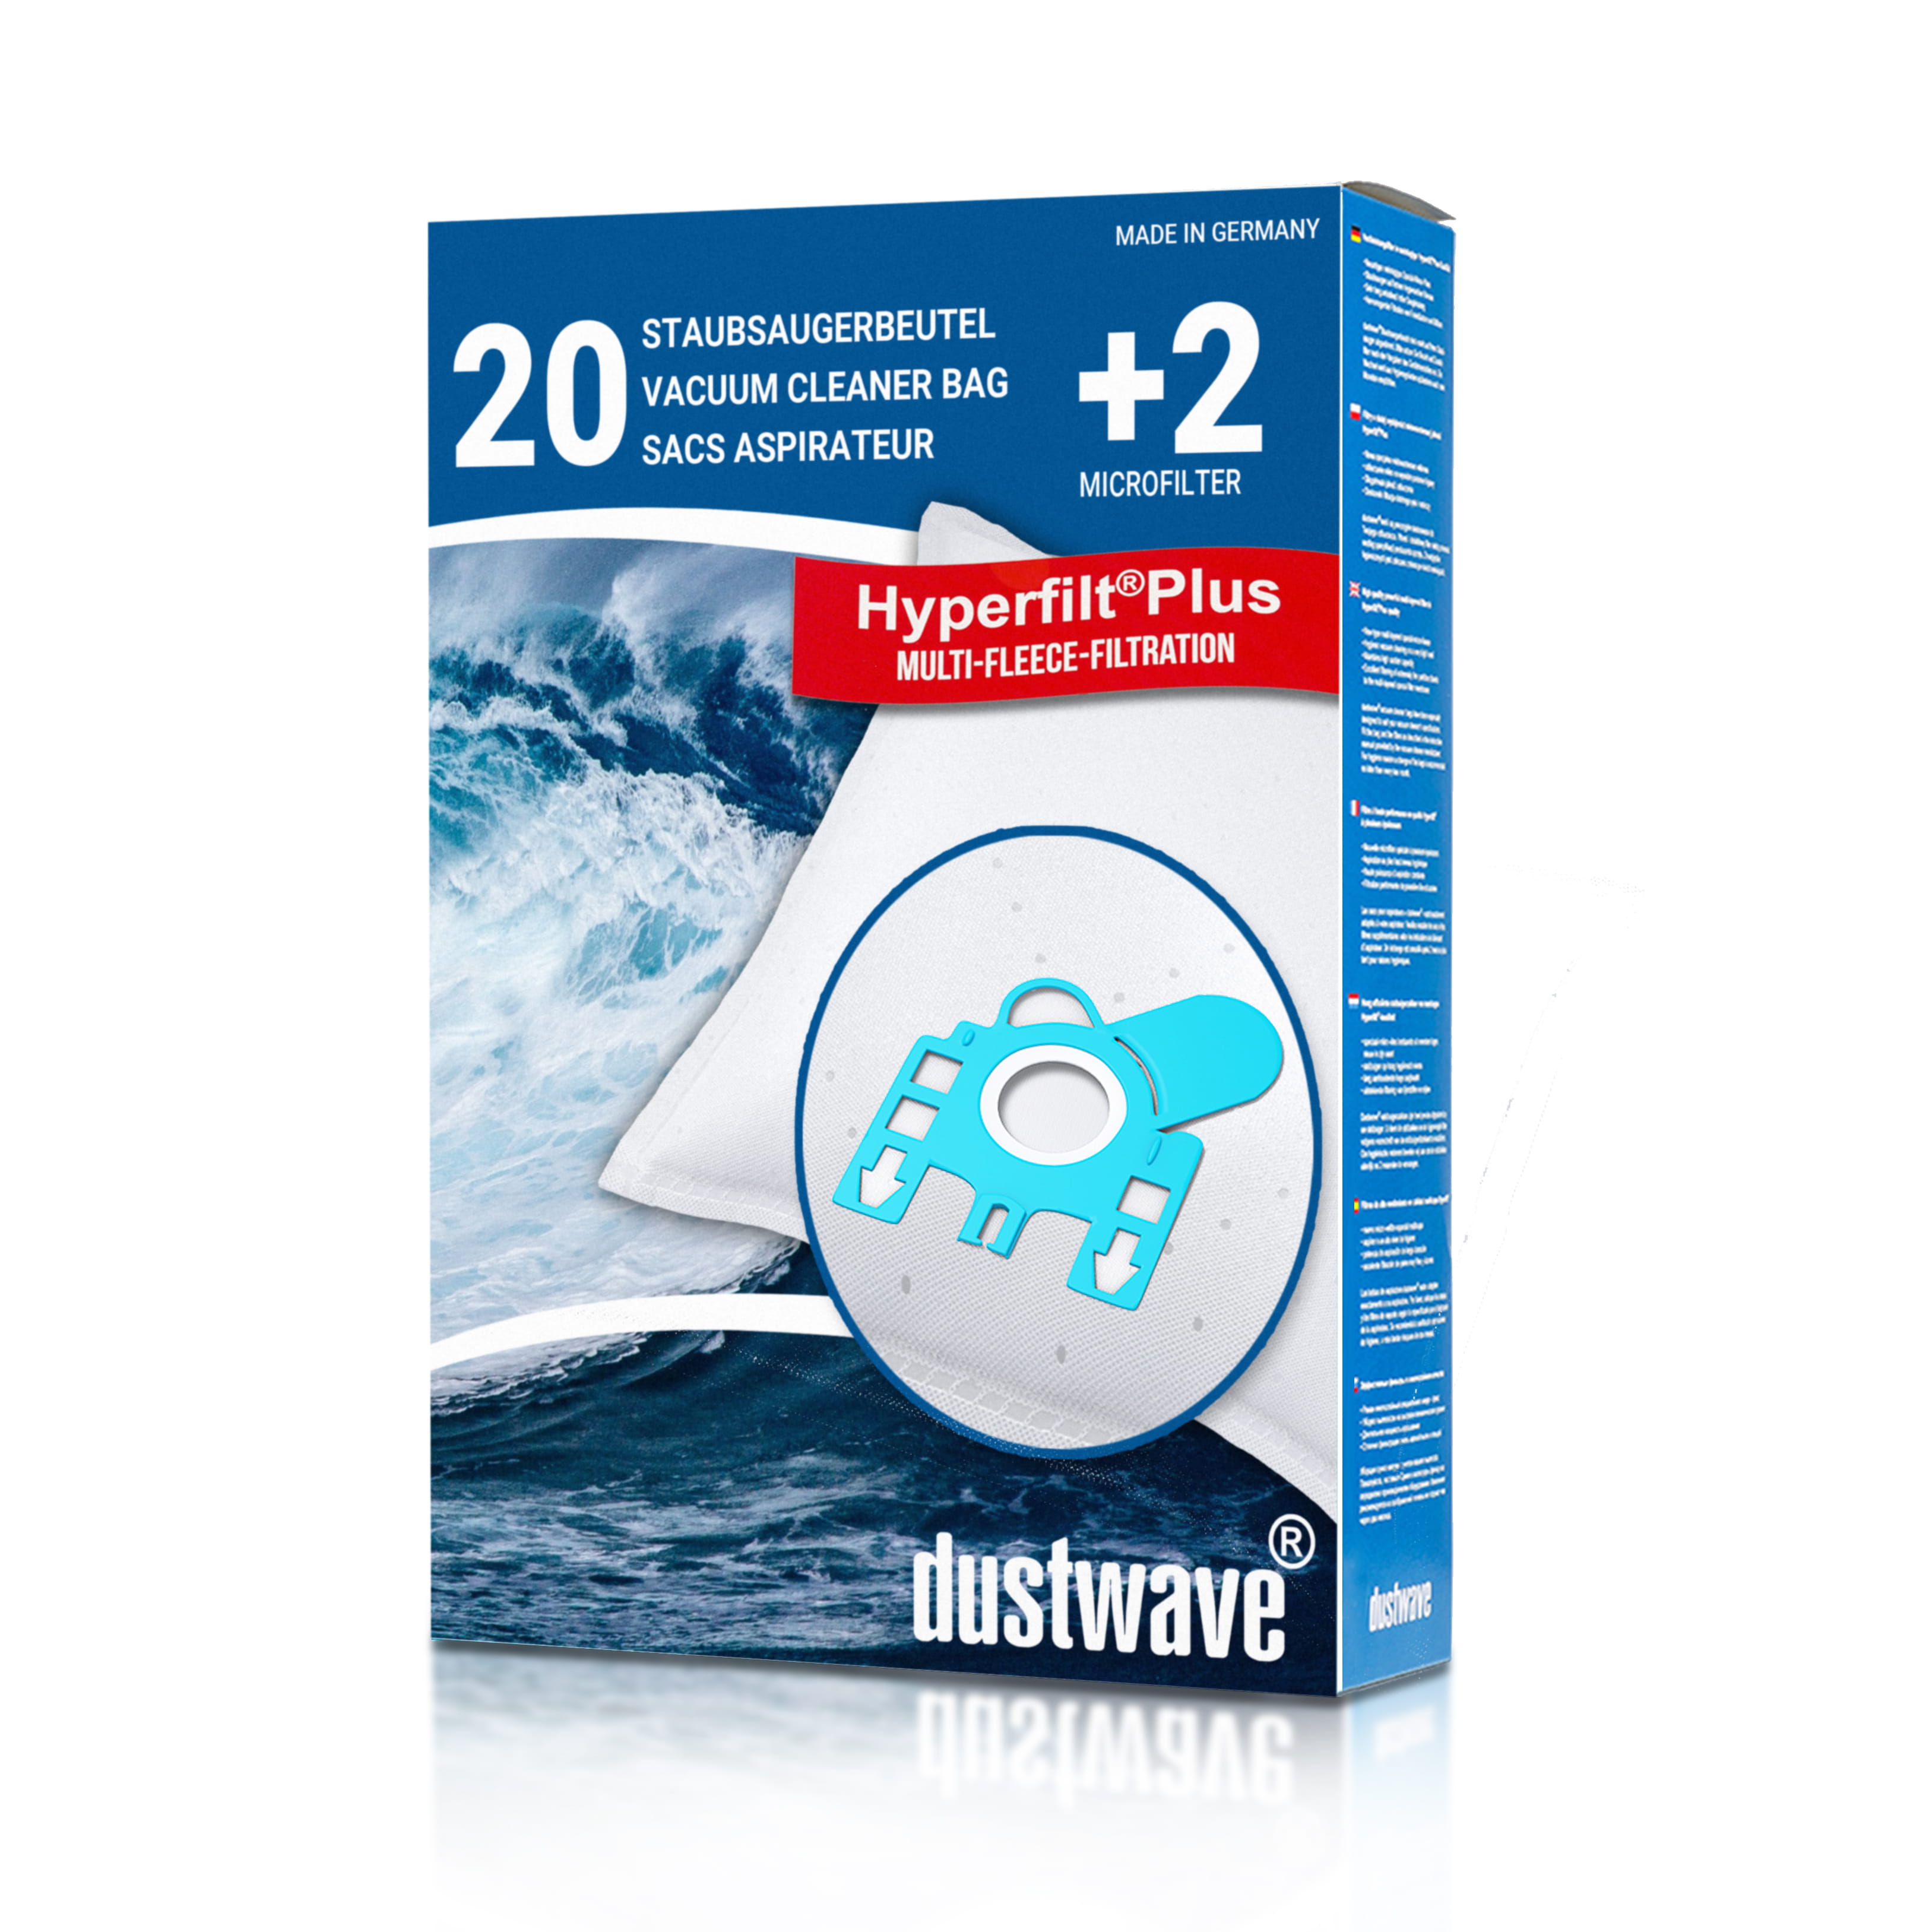 Dustwave® 20 Staubsaugerbeutel für Hoover T4424 / TRT4424 - hocheffizient, mehrlagiges Mikrovlies mit Hygieneverschluss - Made in Germany